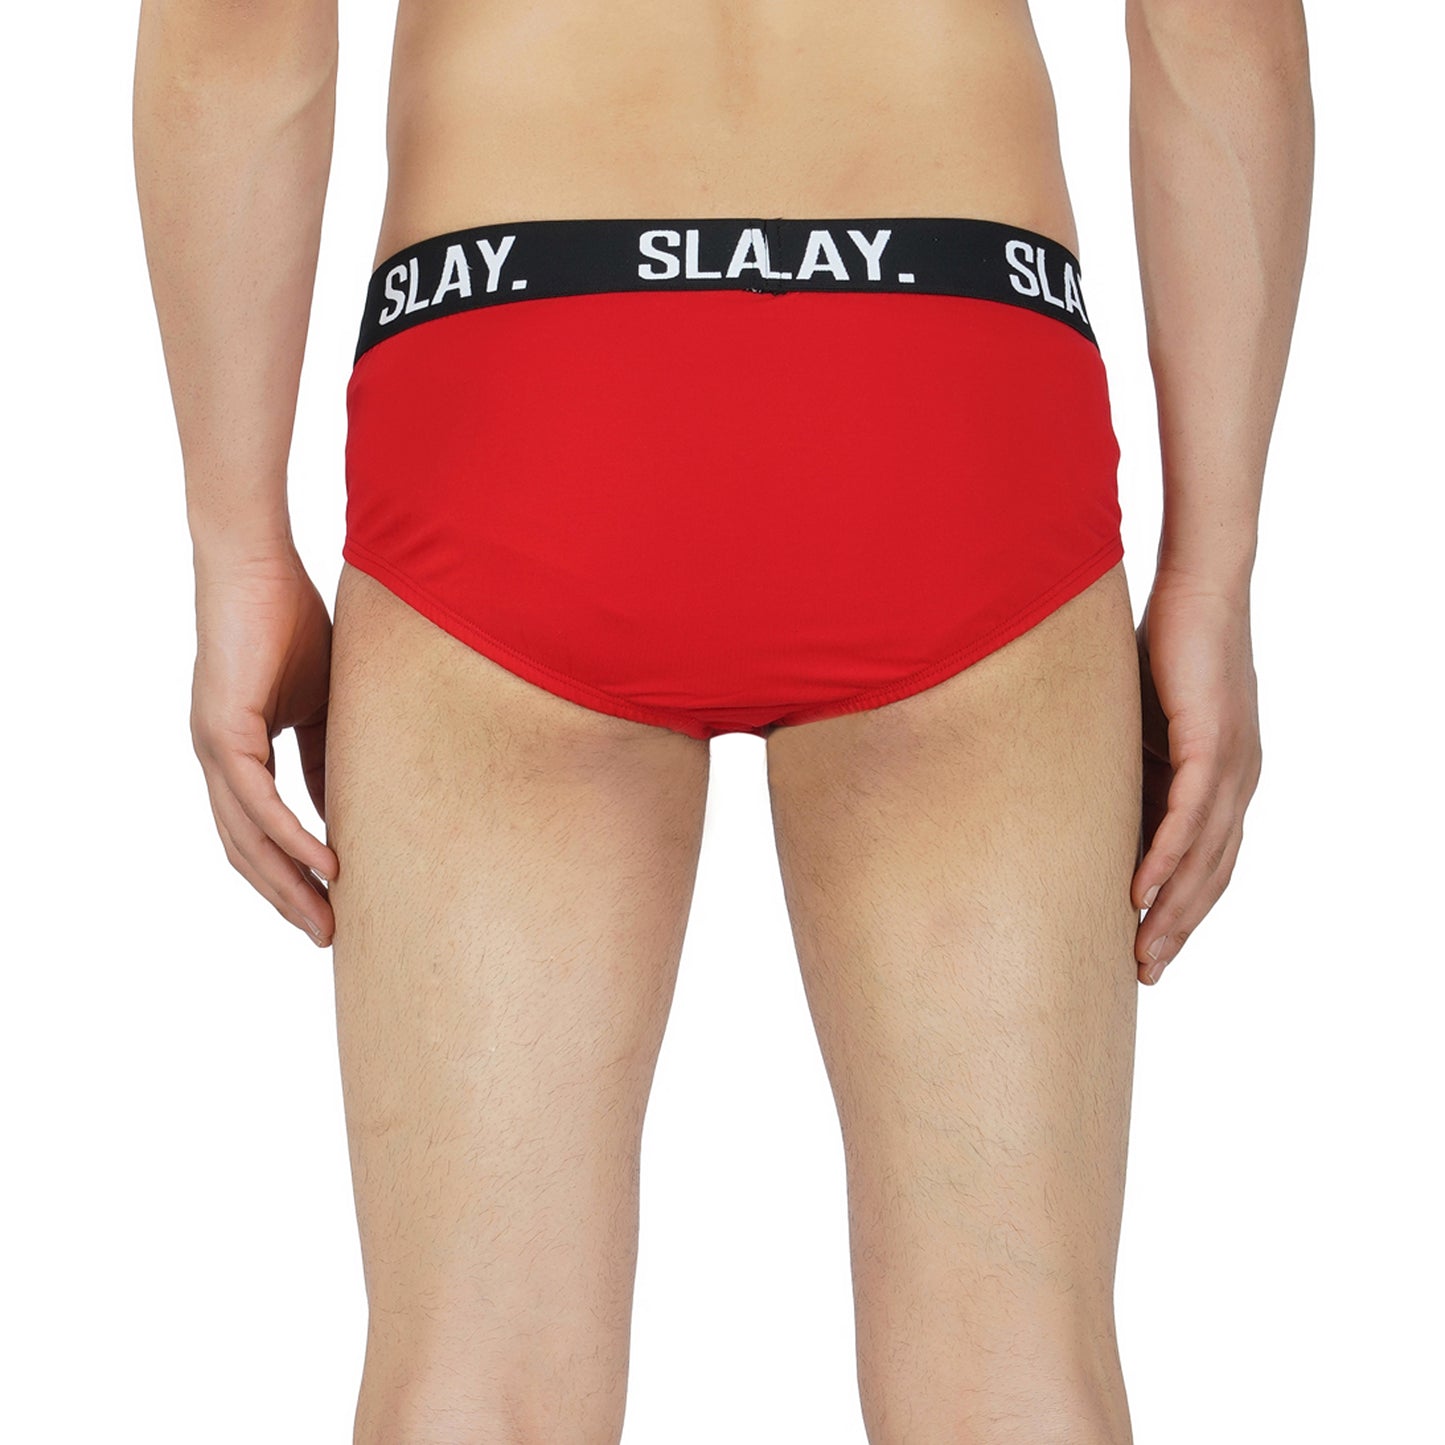 SLAY. Men's Red Underwear Cotton Briefs